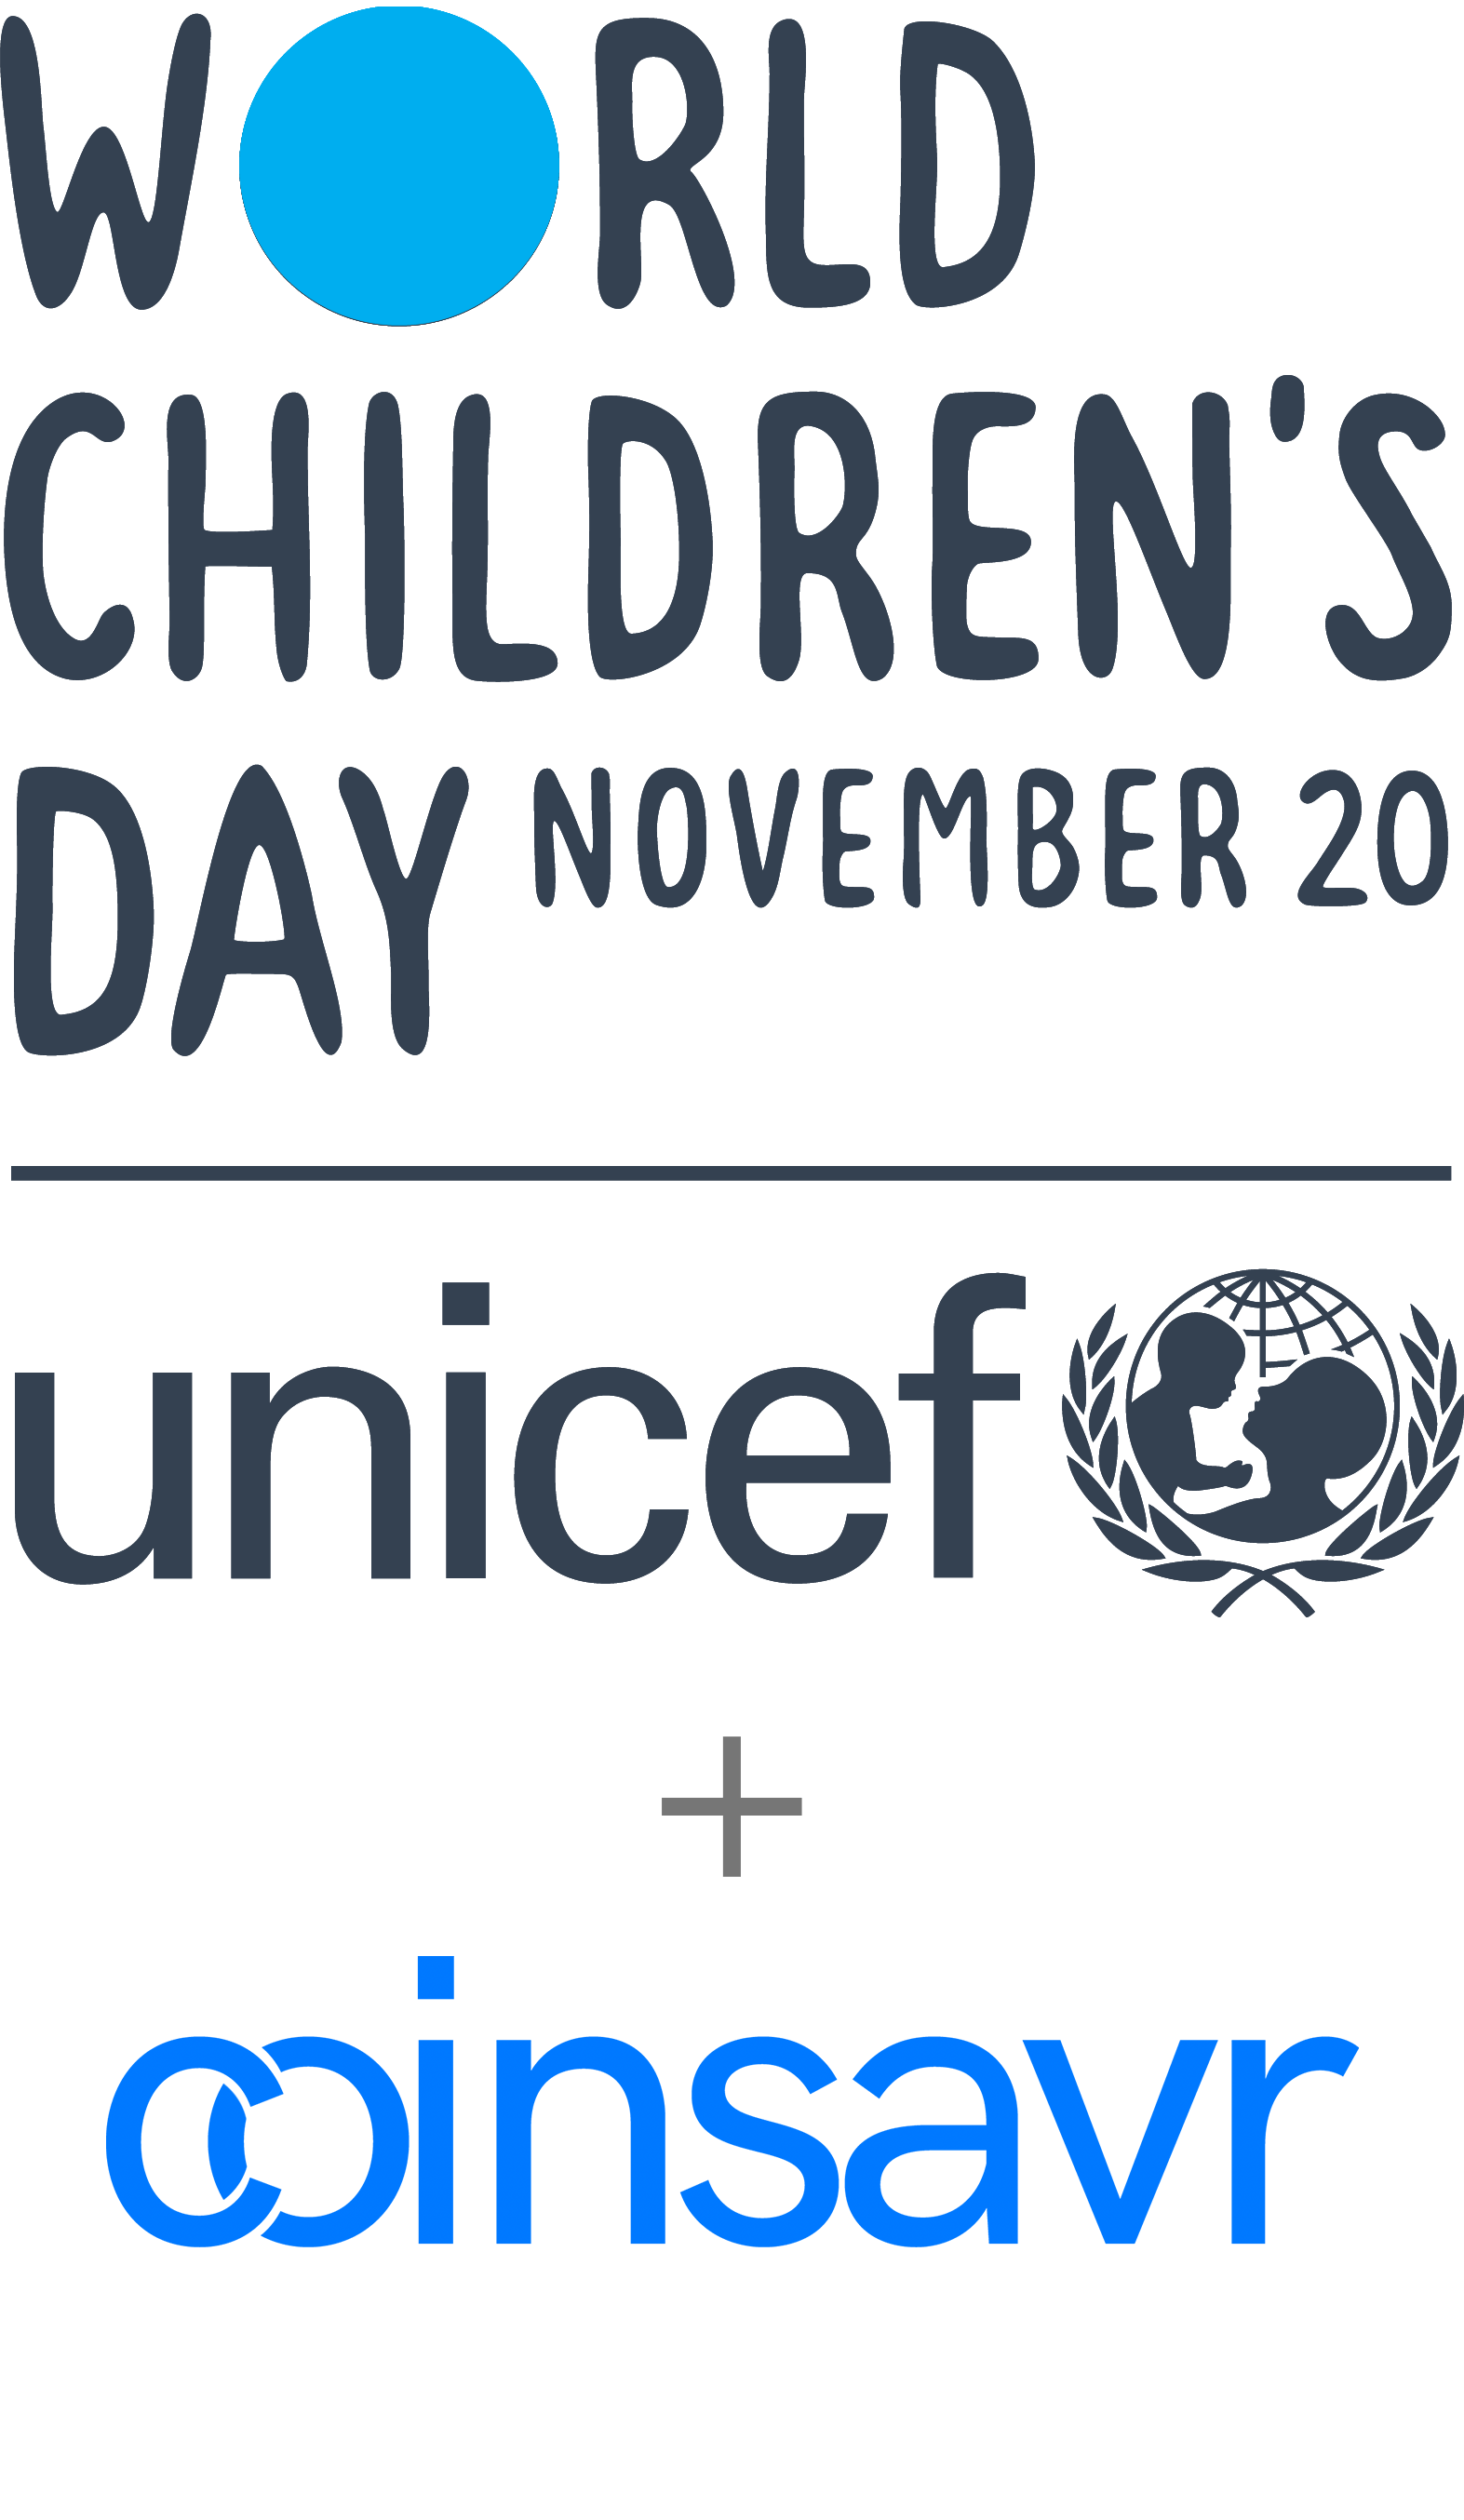 World's Children Day